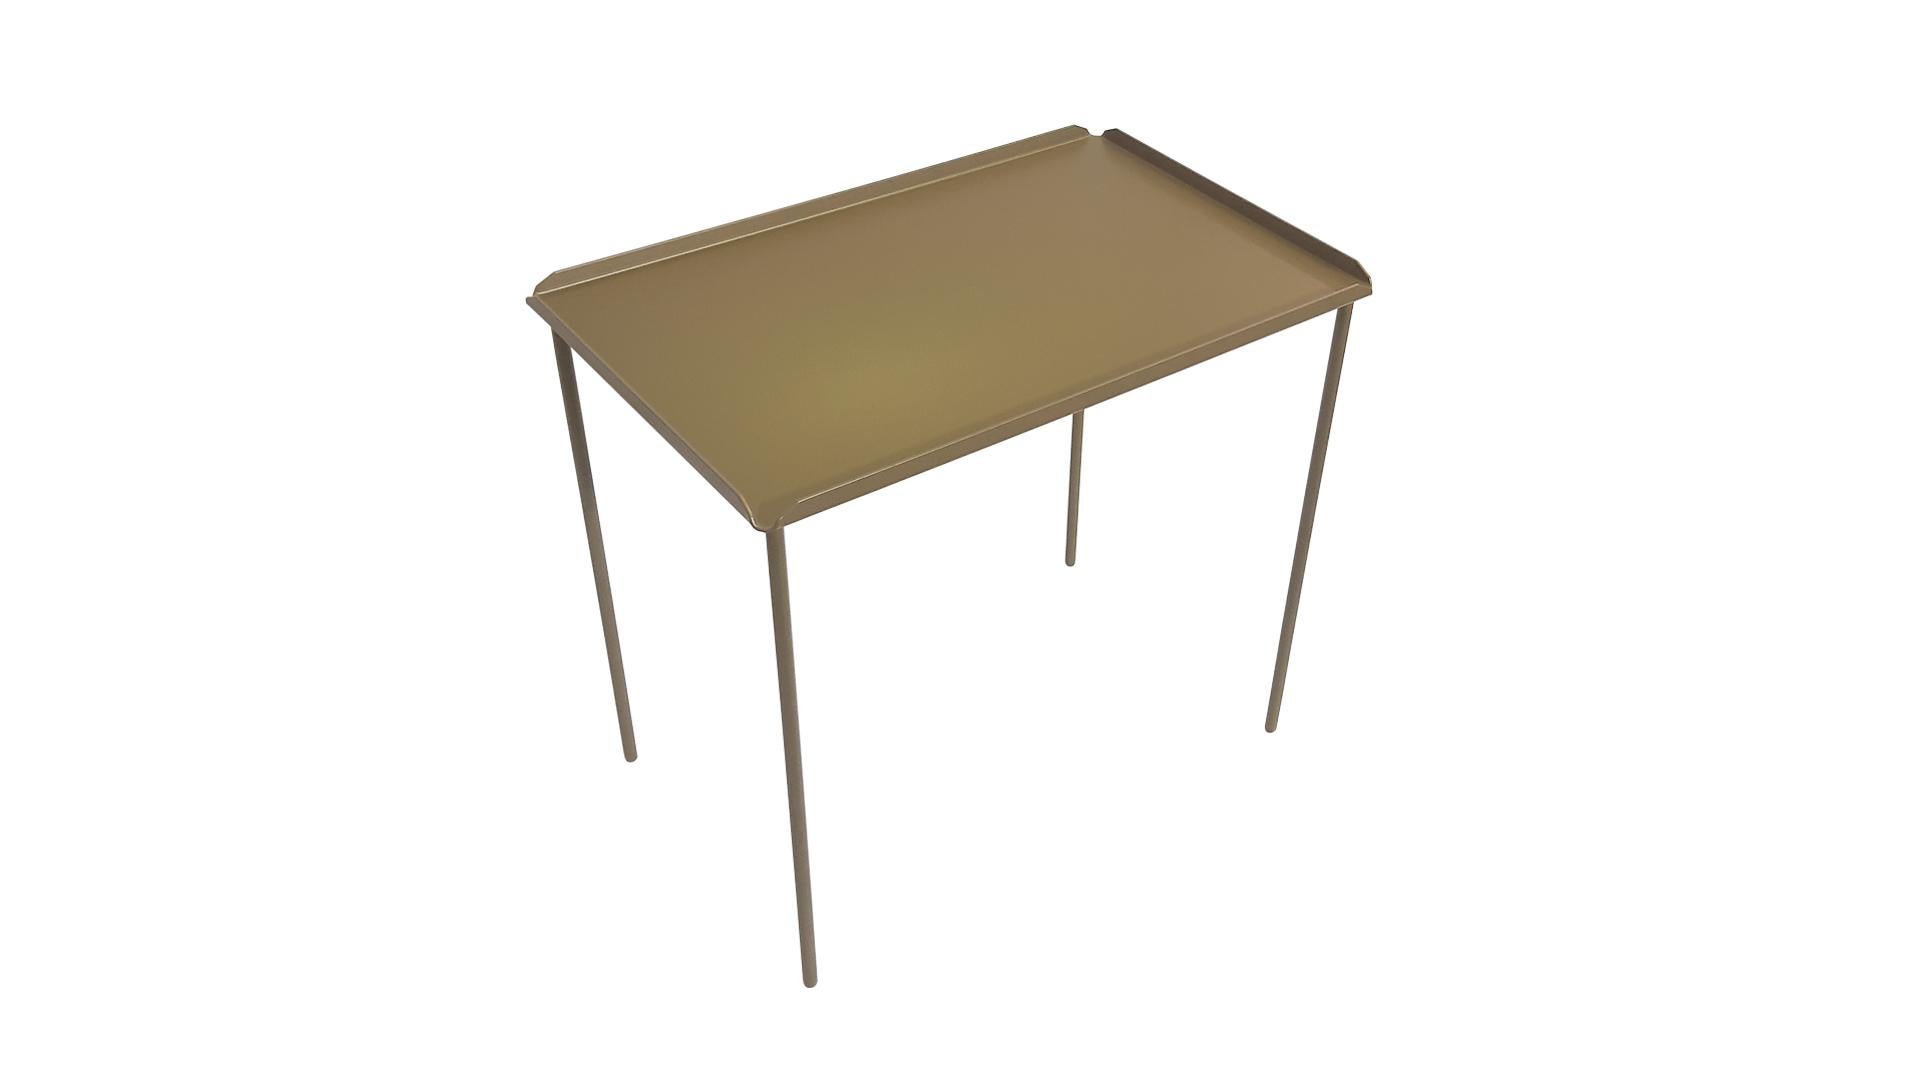 Une table basse italienne contemporaine compacte construite à partir d'une seule tôle d'acier pliée sur les bords, avec quatre pieds effilés arrondis à l'extrémité.

Construit en acier, revêtement en poudre avec finition en laiton ou en acier